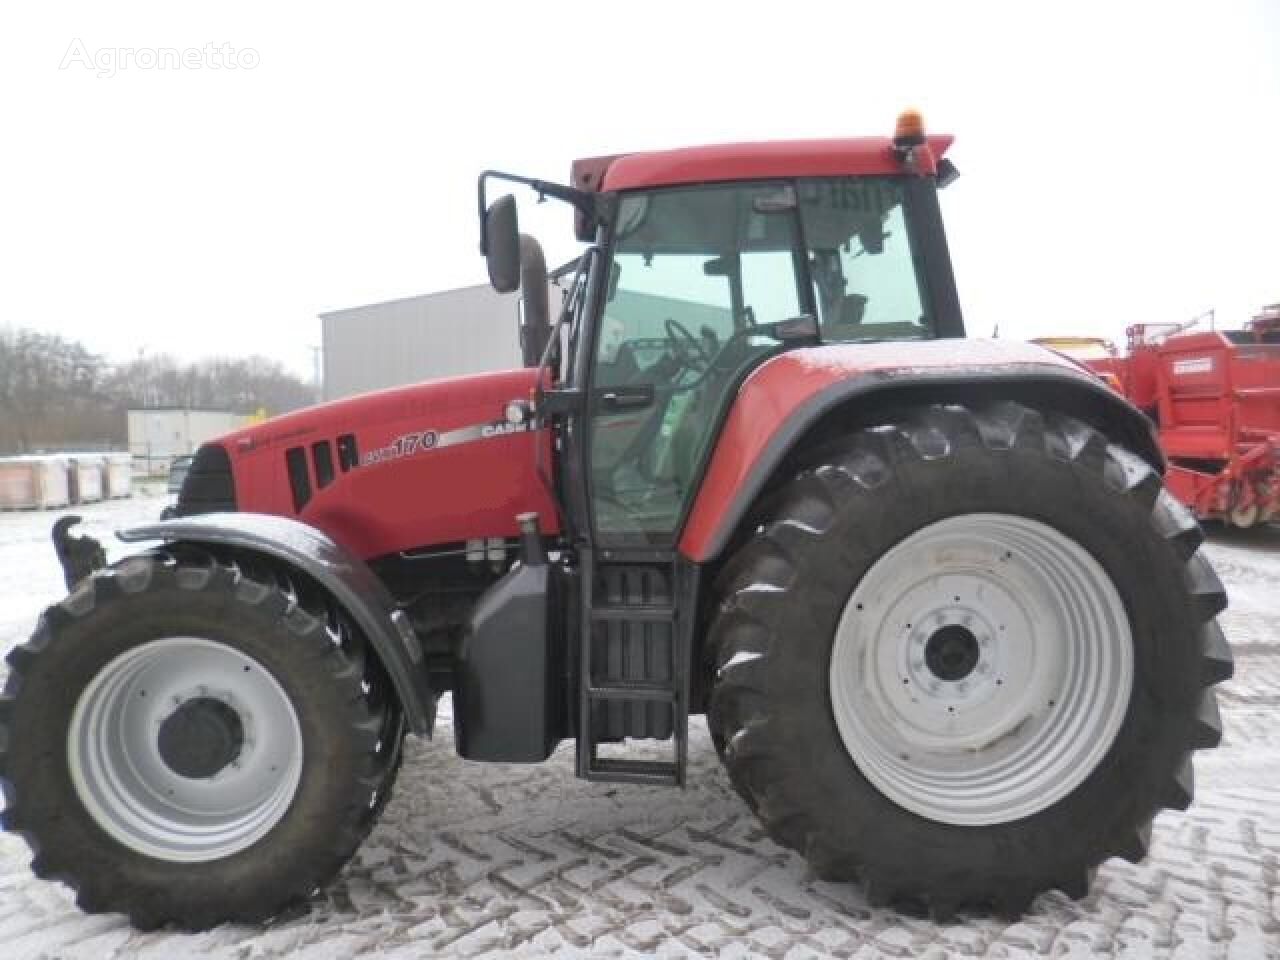 CVX 170 wheel tractor